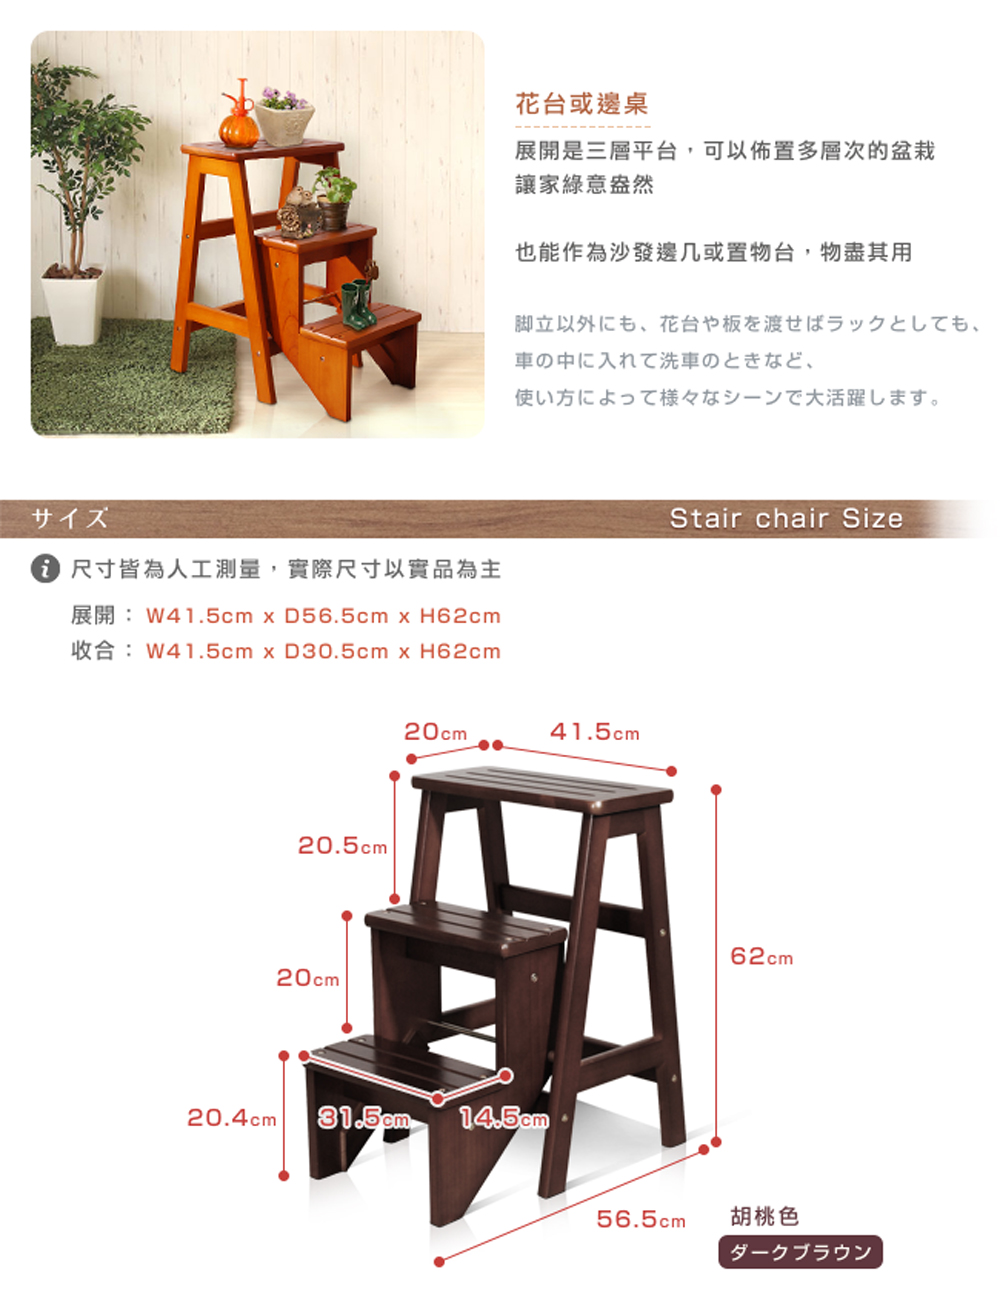 森林系全實木樓梯椅子 可折合樓梯椅 樓梯板凳 (原木、胡桃、白色)